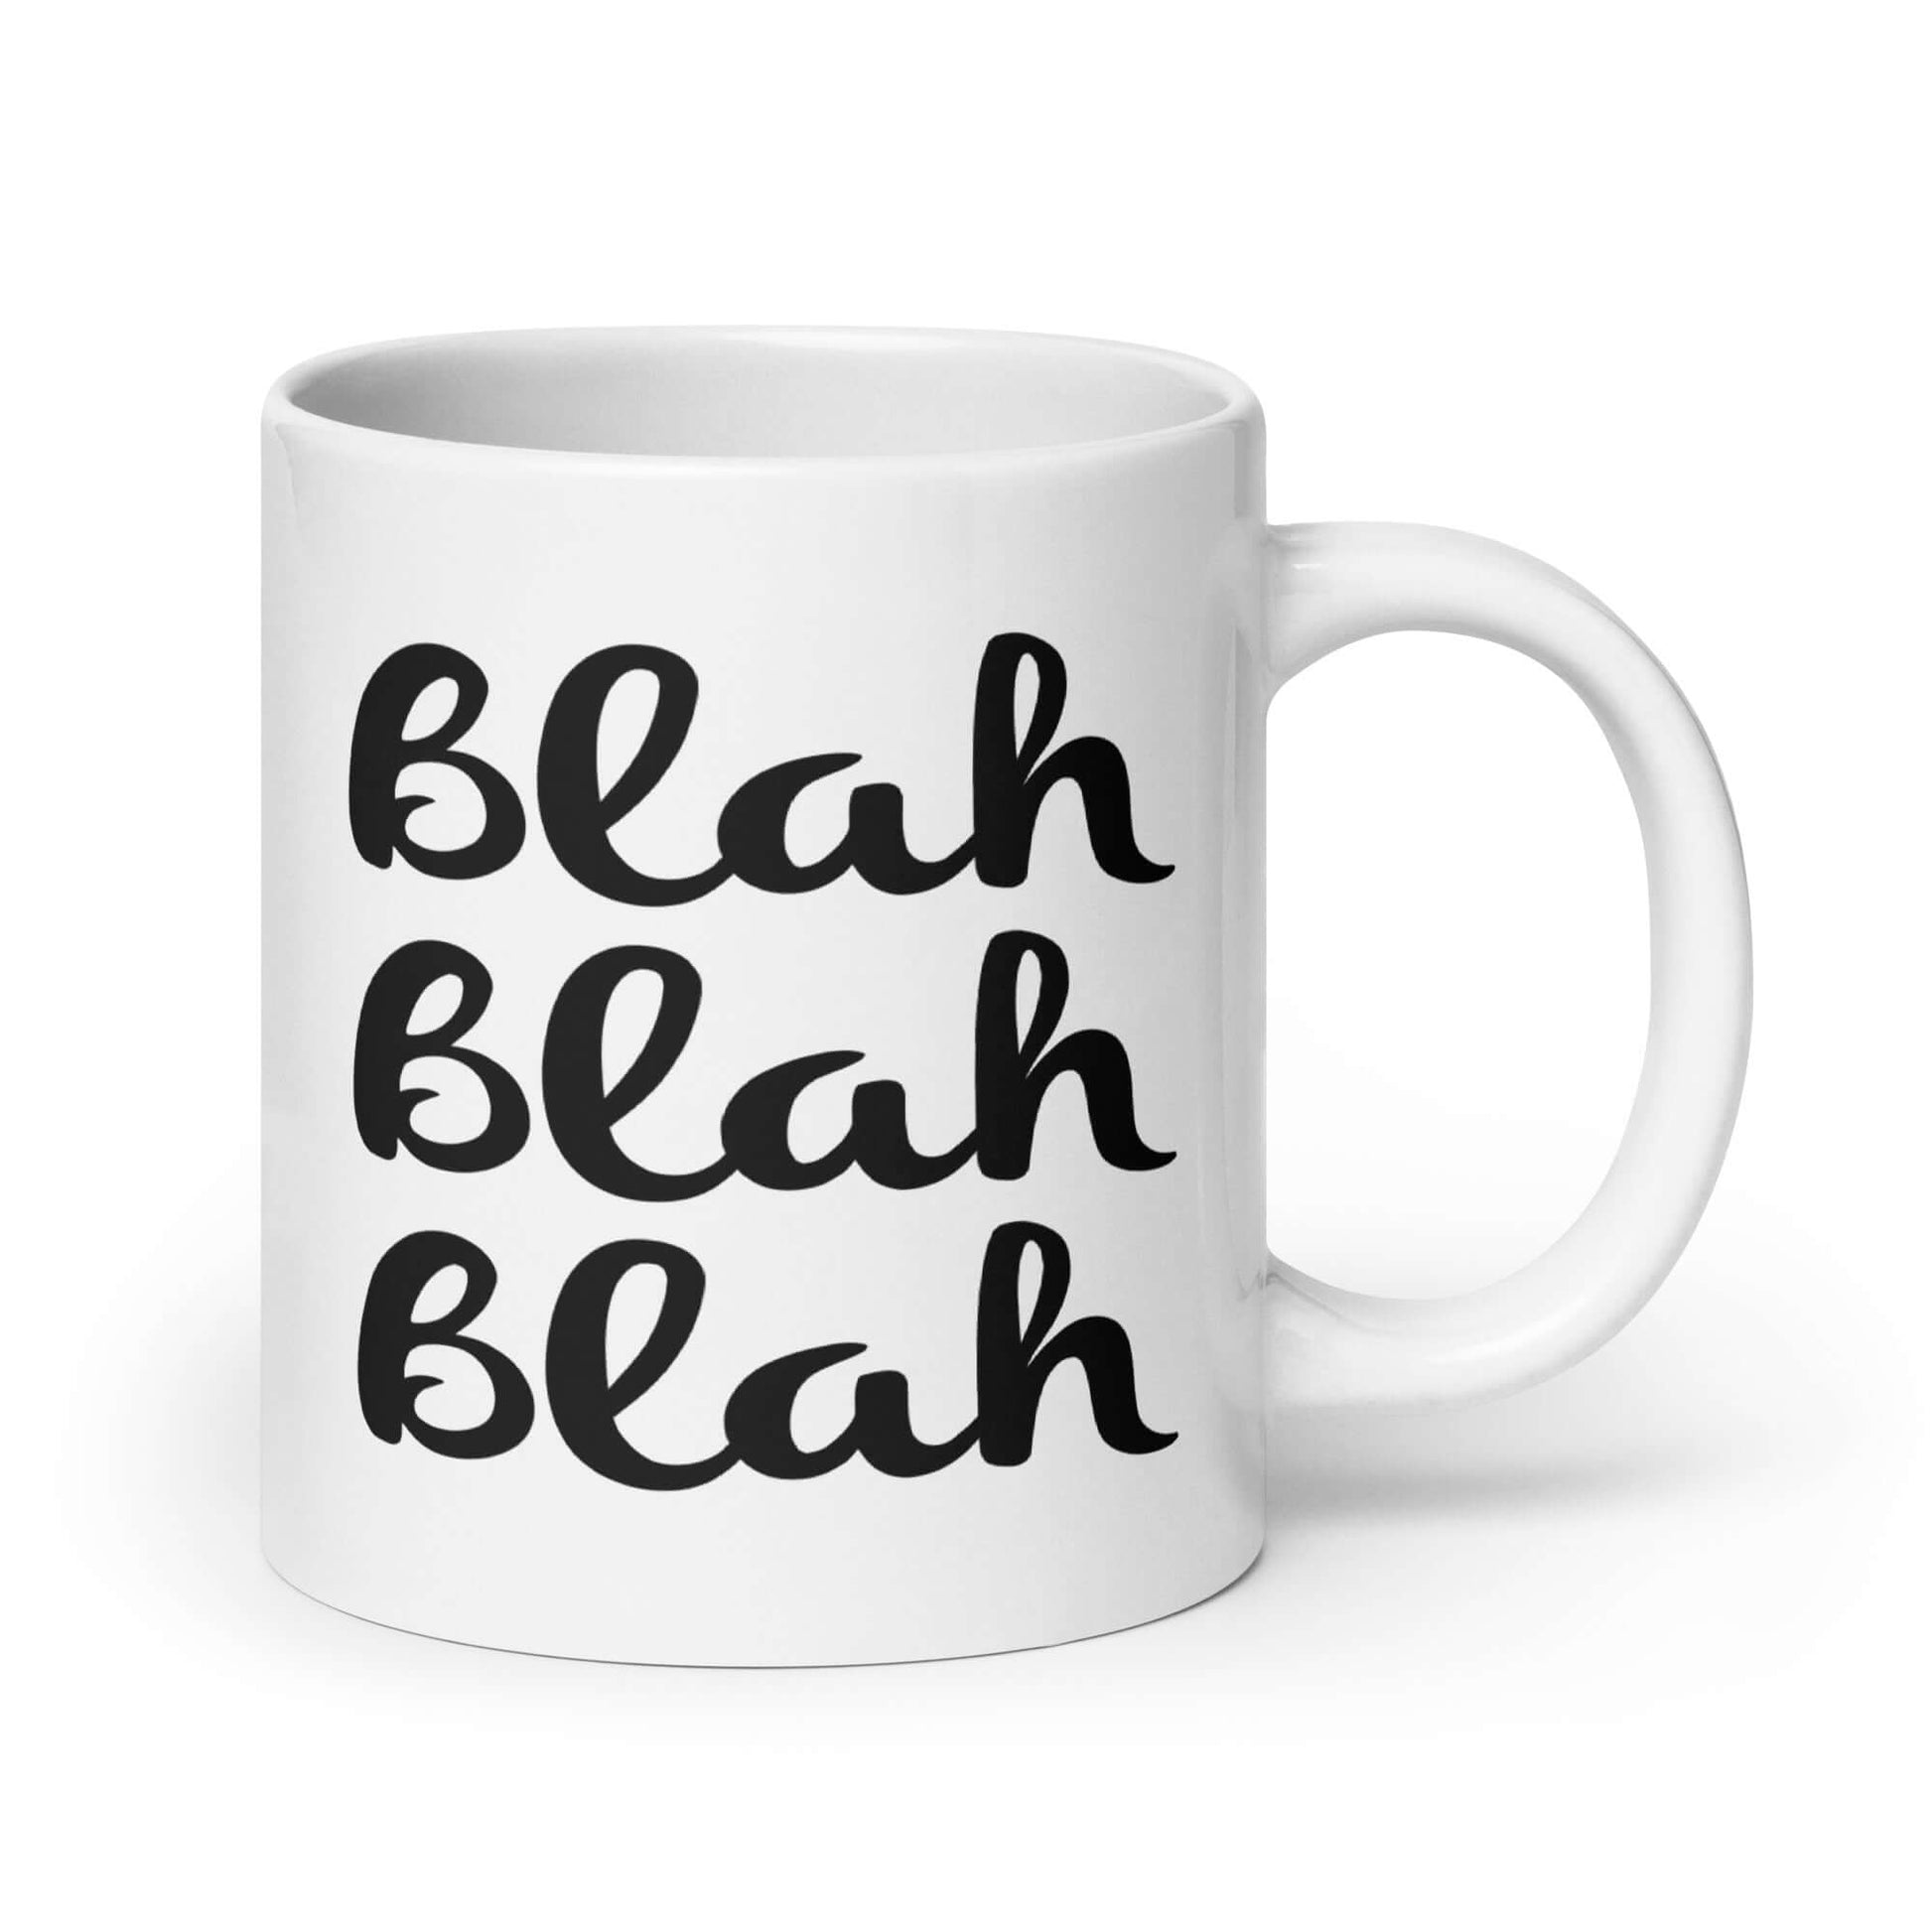 White ceramic coffee mug with the words Blah Blah Blah printed on both sides.